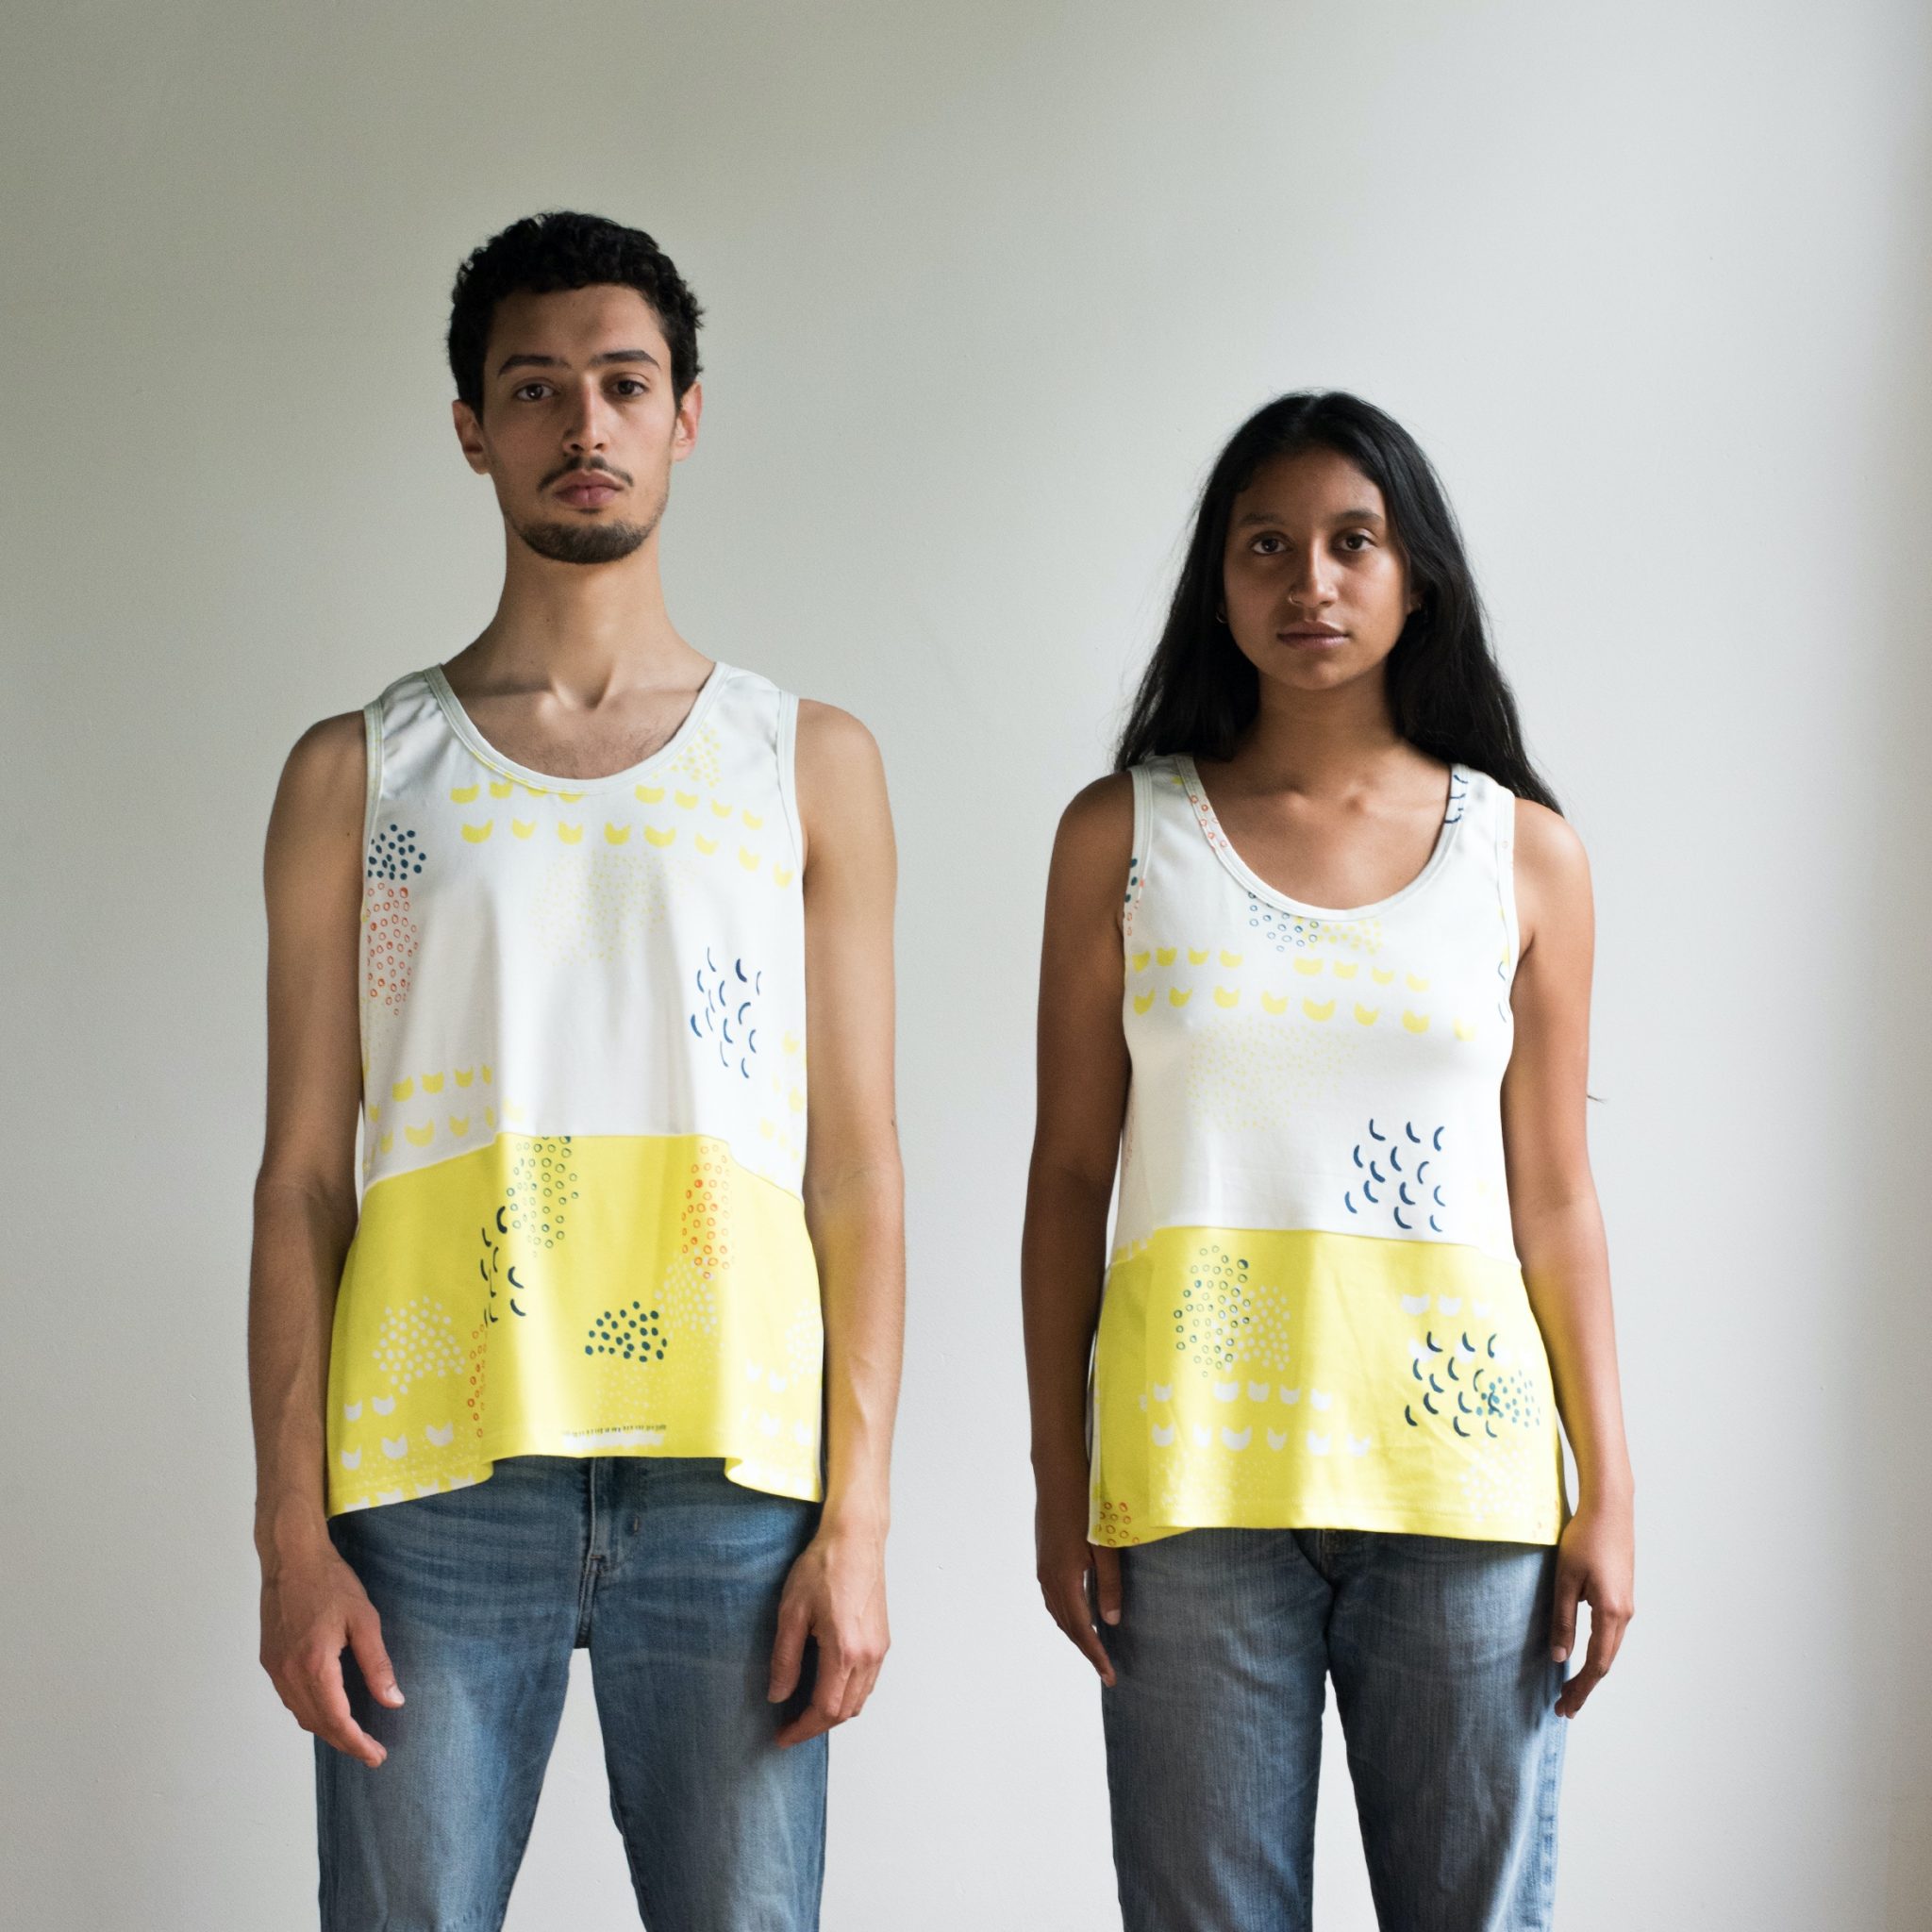 Amnesty International lanceert T-shirt tegen seksueel geweld - 1